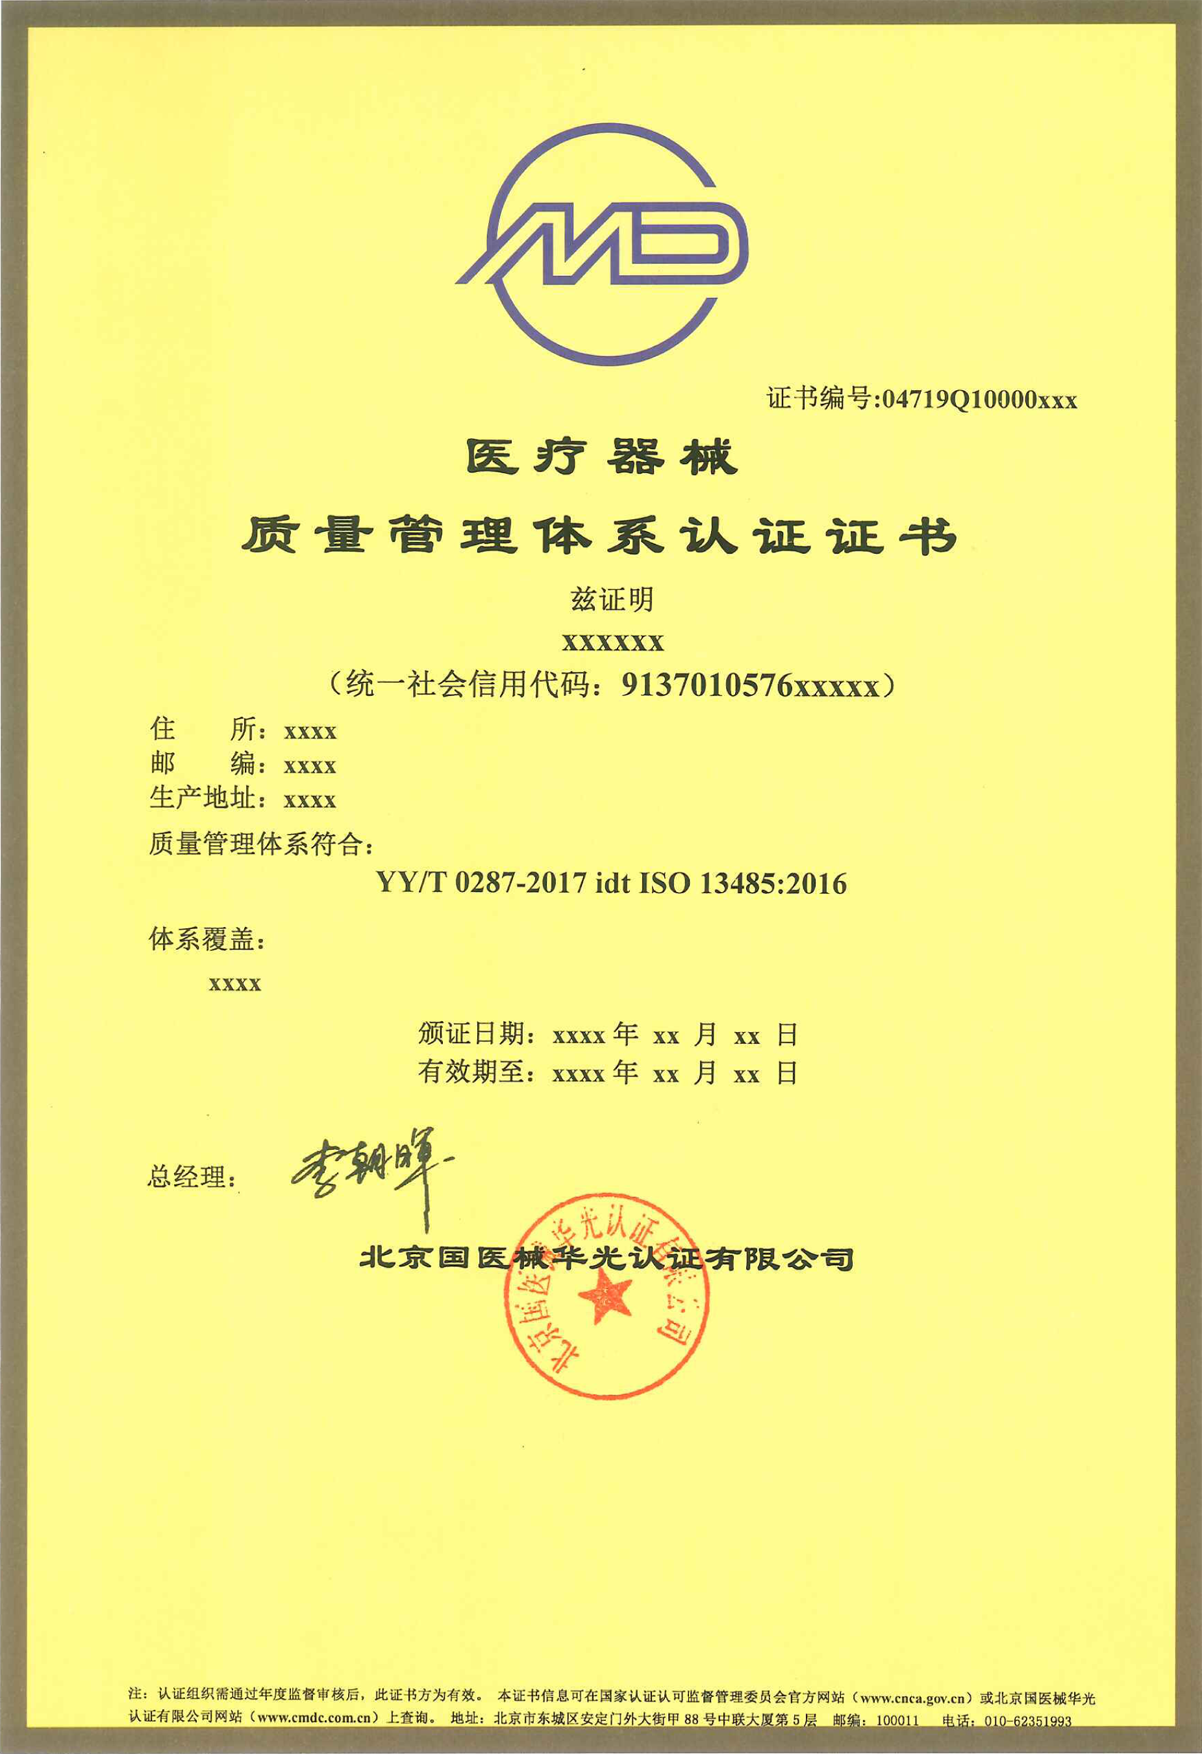 iso13485:2016 中文证书